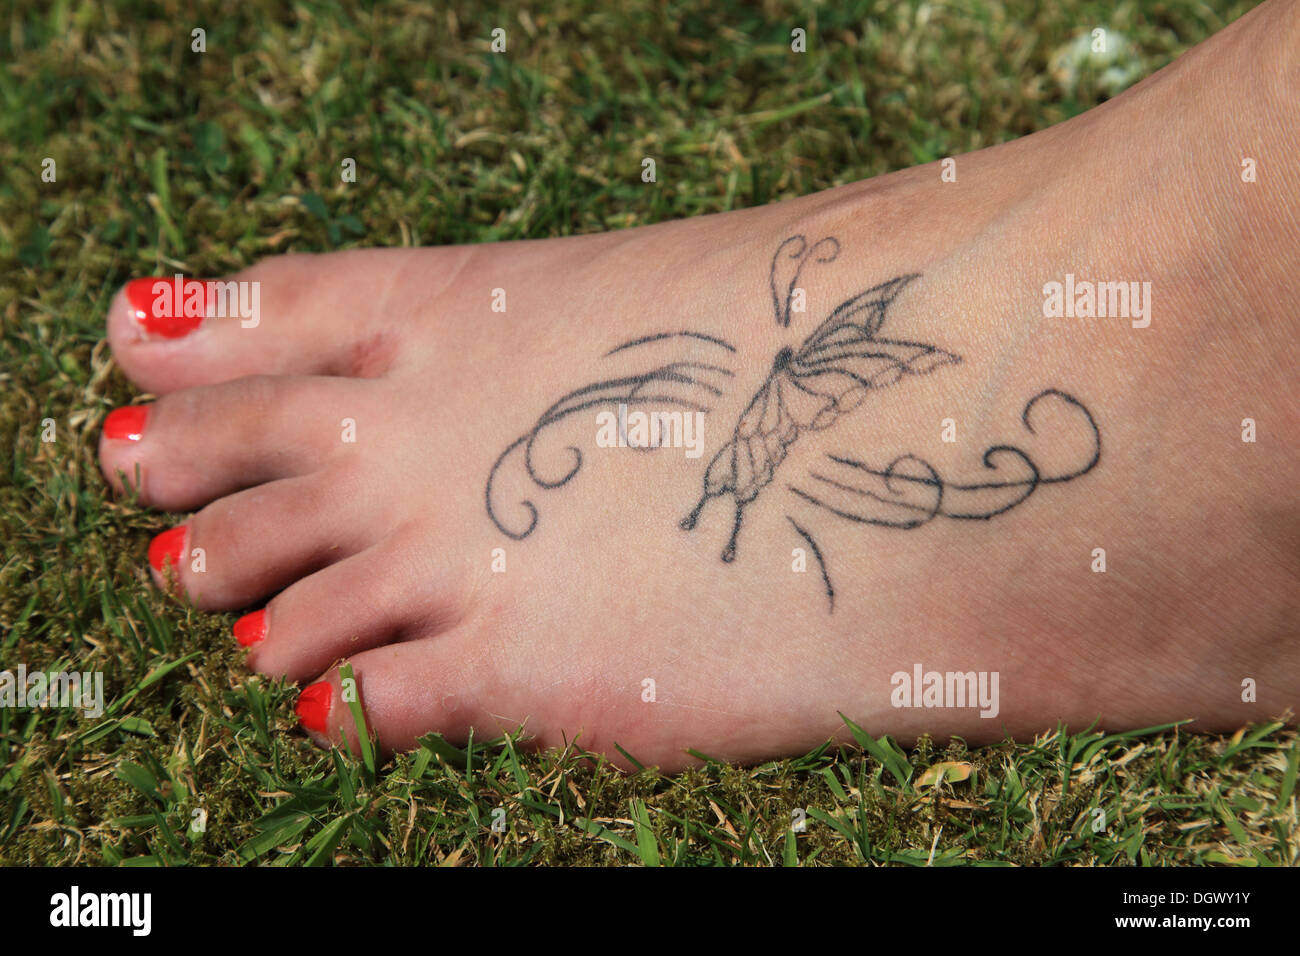 Un délicat tatouage sur le pied d'une adolescente Banque D'Images